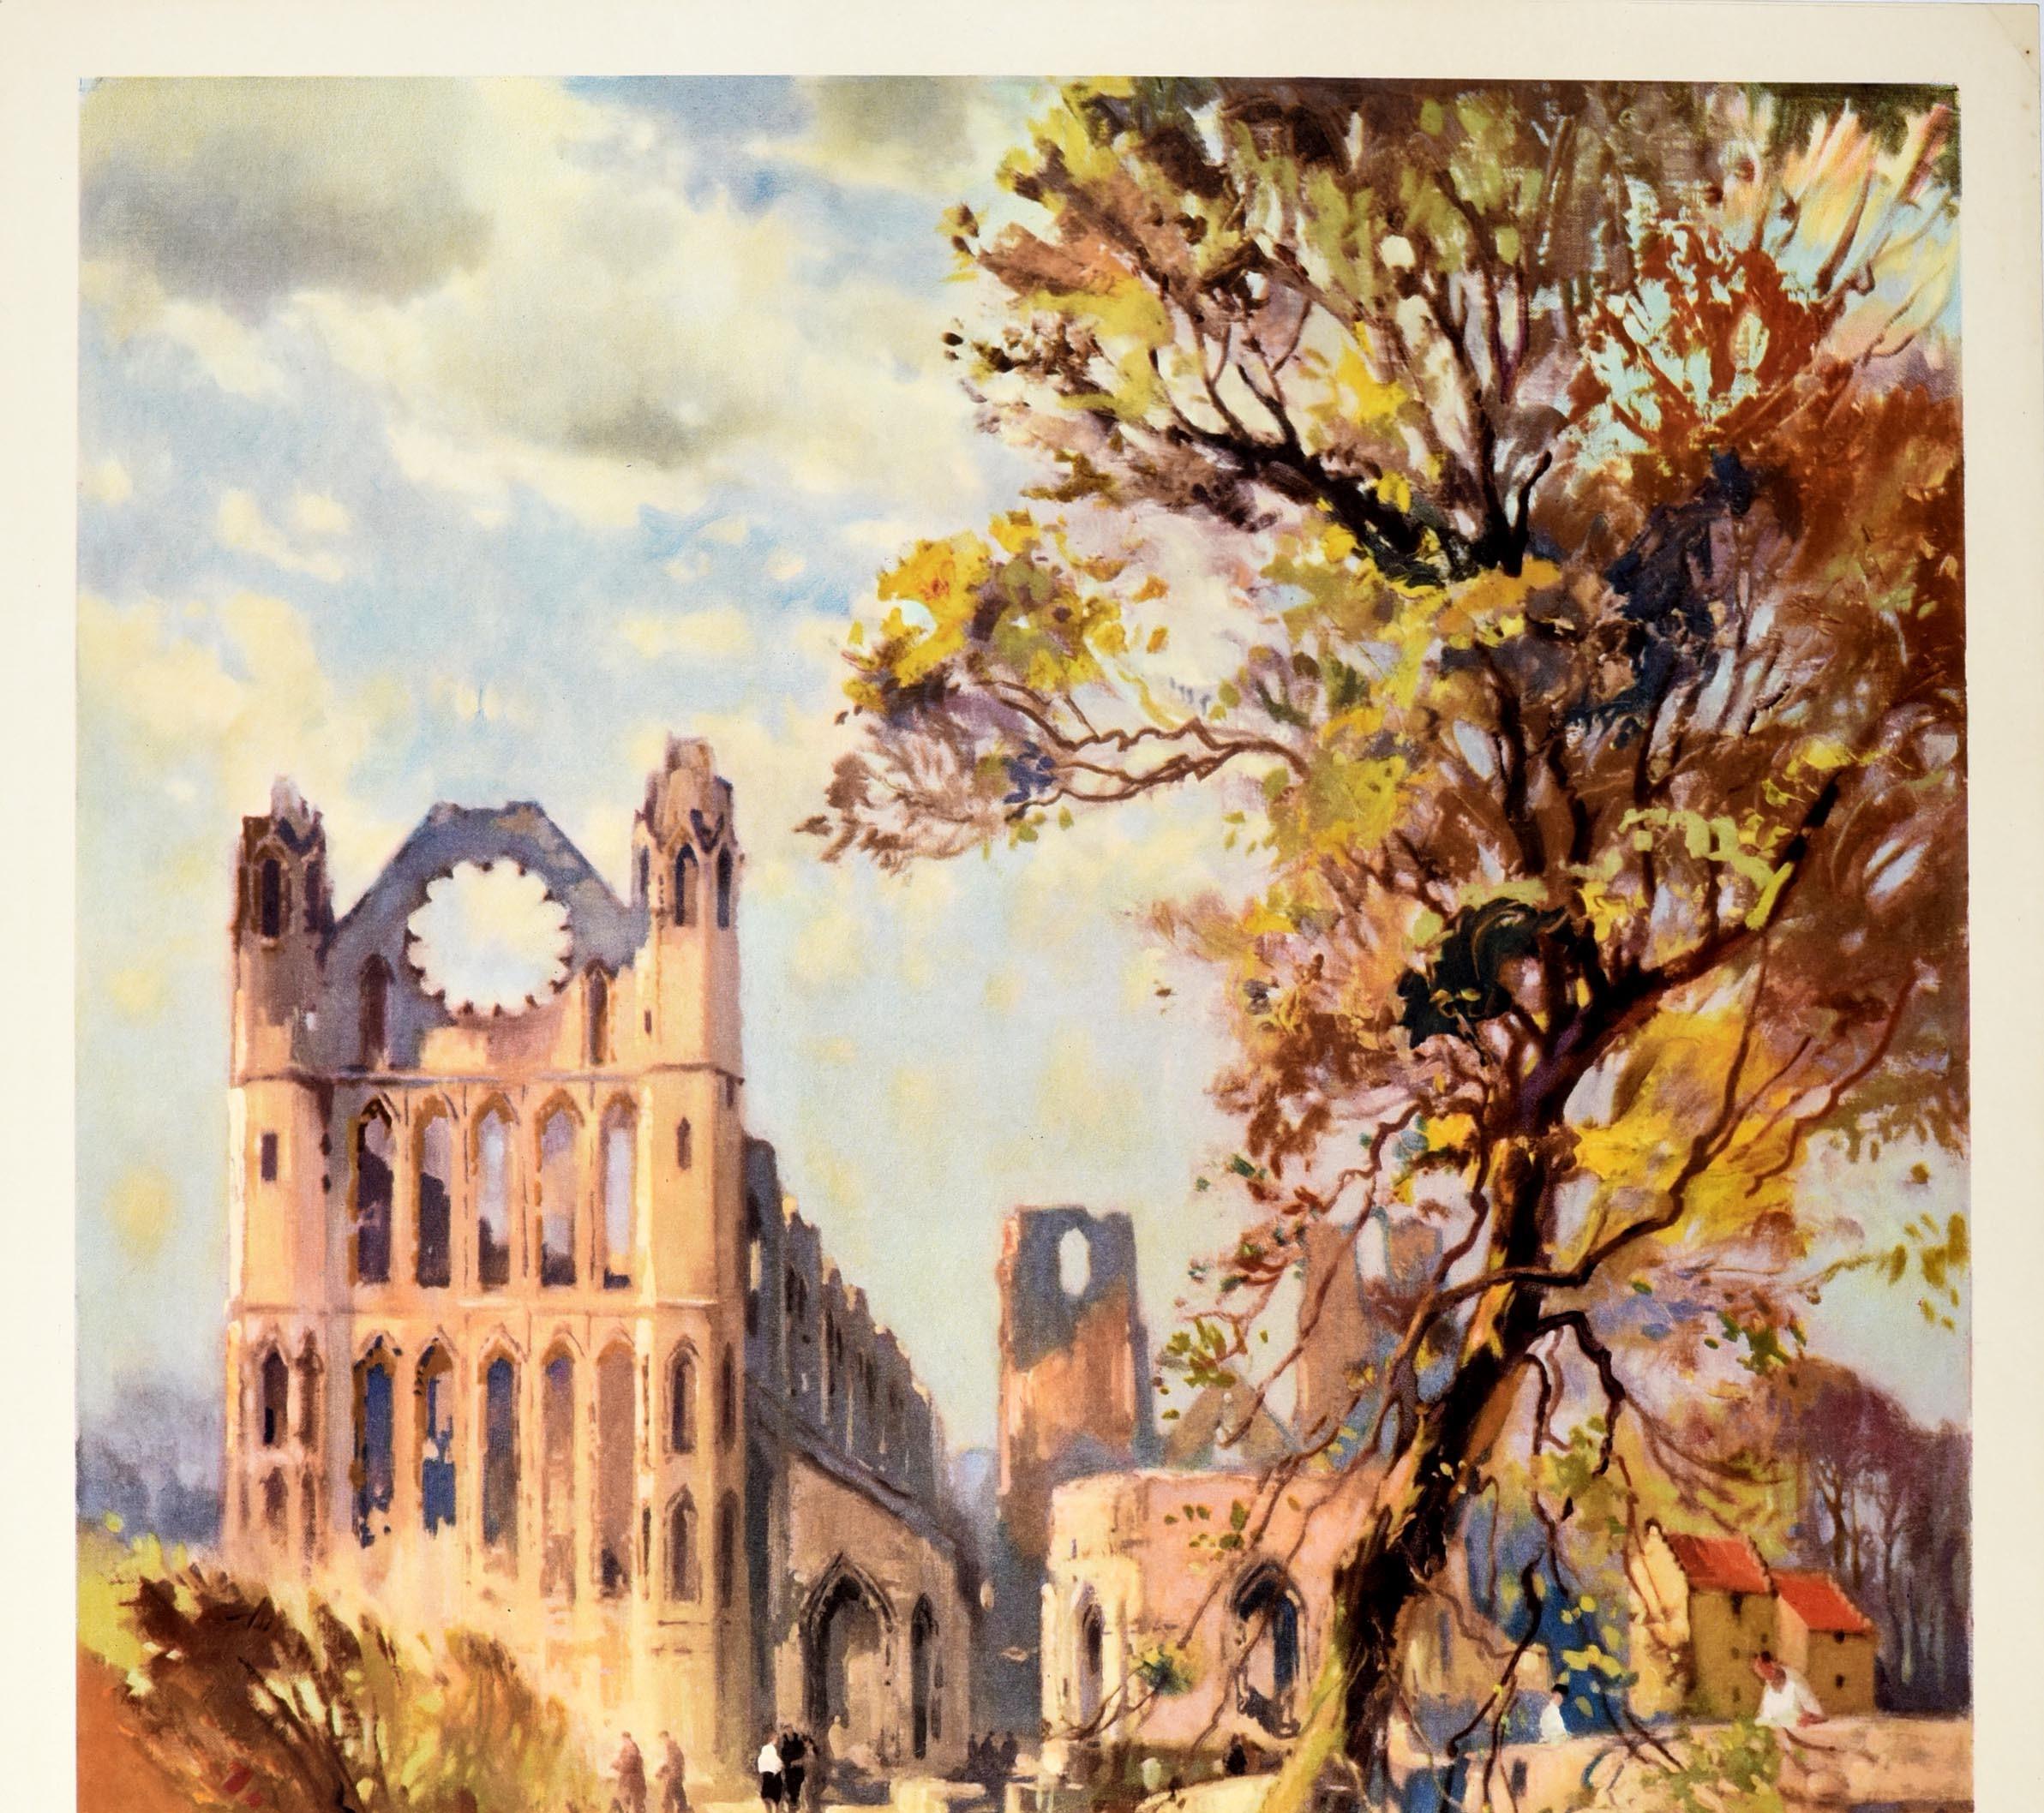 Originales Vintage-Reiseplakat für die Kathedrale von Elgin Diese berühmte alte Kathedrale im Nordosten Schottlands stammt aus dem Jahr 1224 n. Chr. Schottland mit dem Zug sehen British Railways. Großartiges Kunstwerk von Jack Merriott (1901-1968)